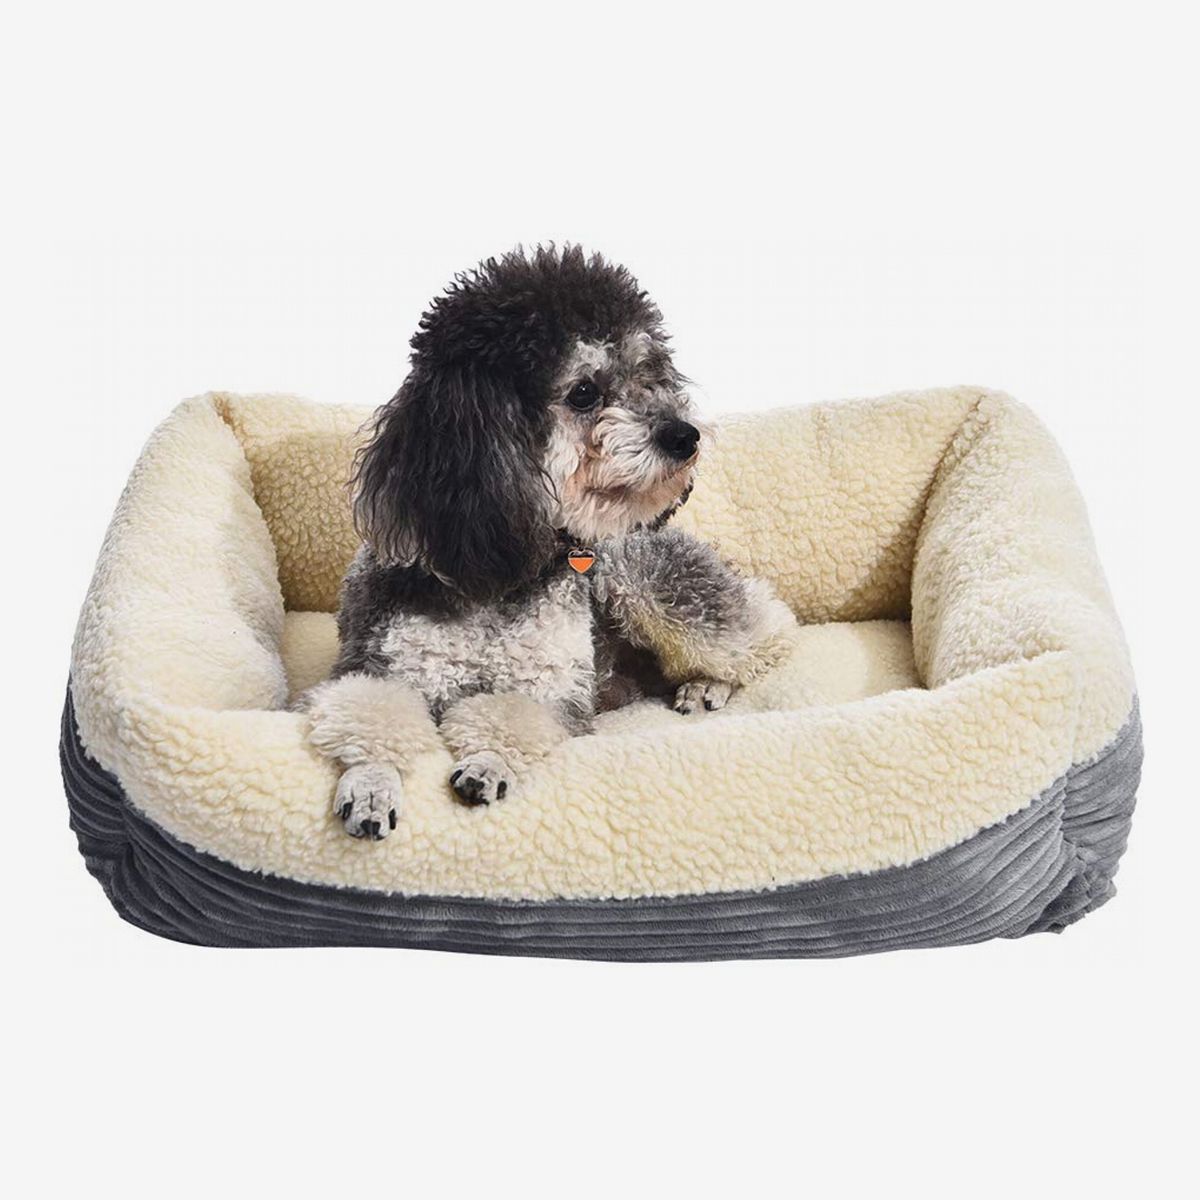 30 inch round dog bed